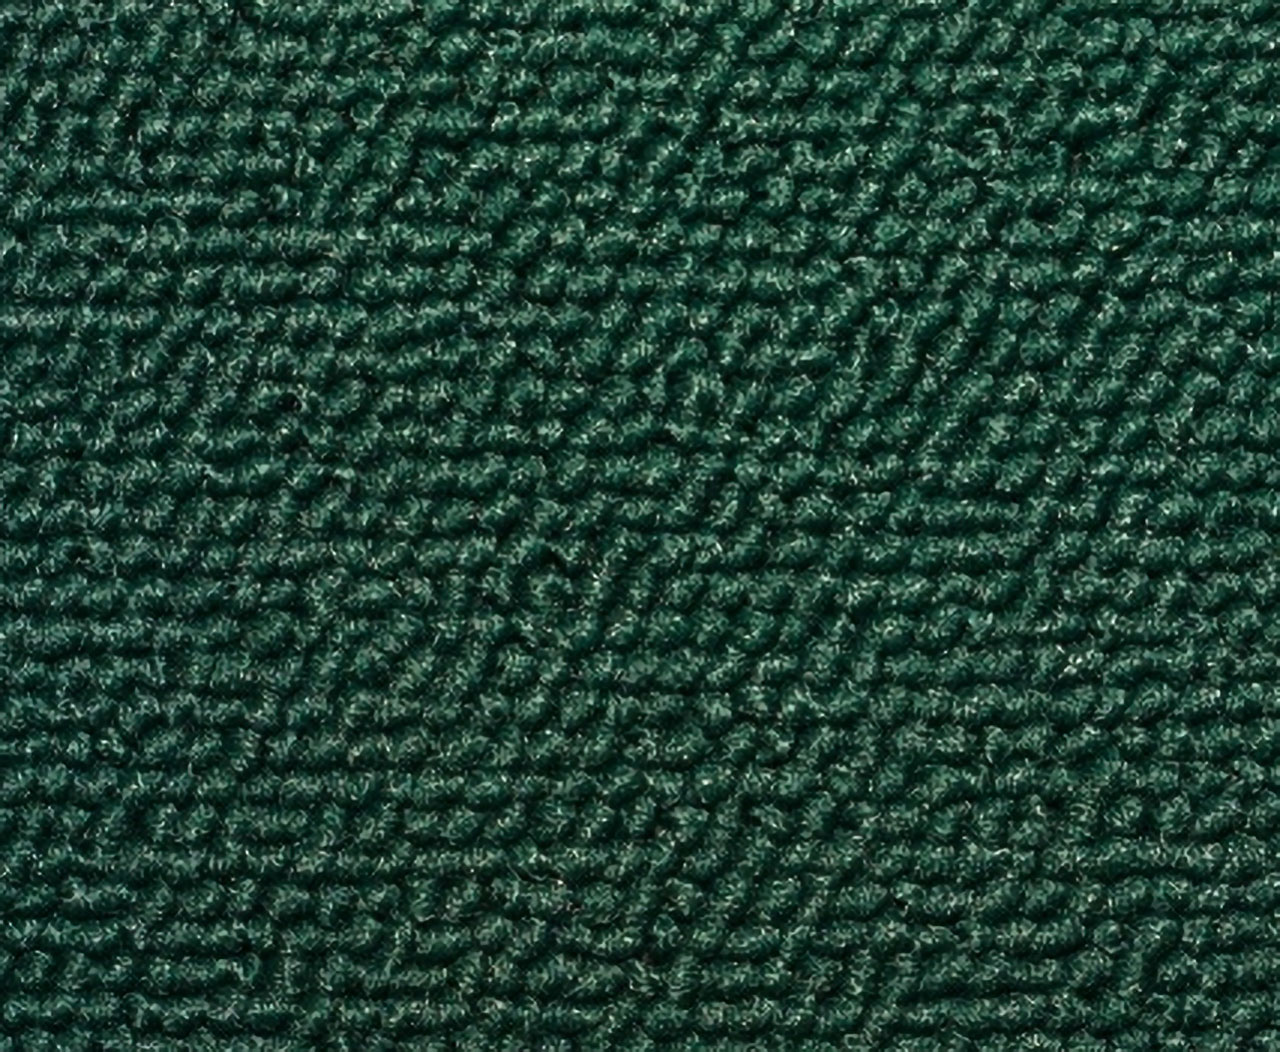 Holden Kingswood HZ Kingswood Ute 33T Sage Green & Cloth Carpet (Image 1 of 1)